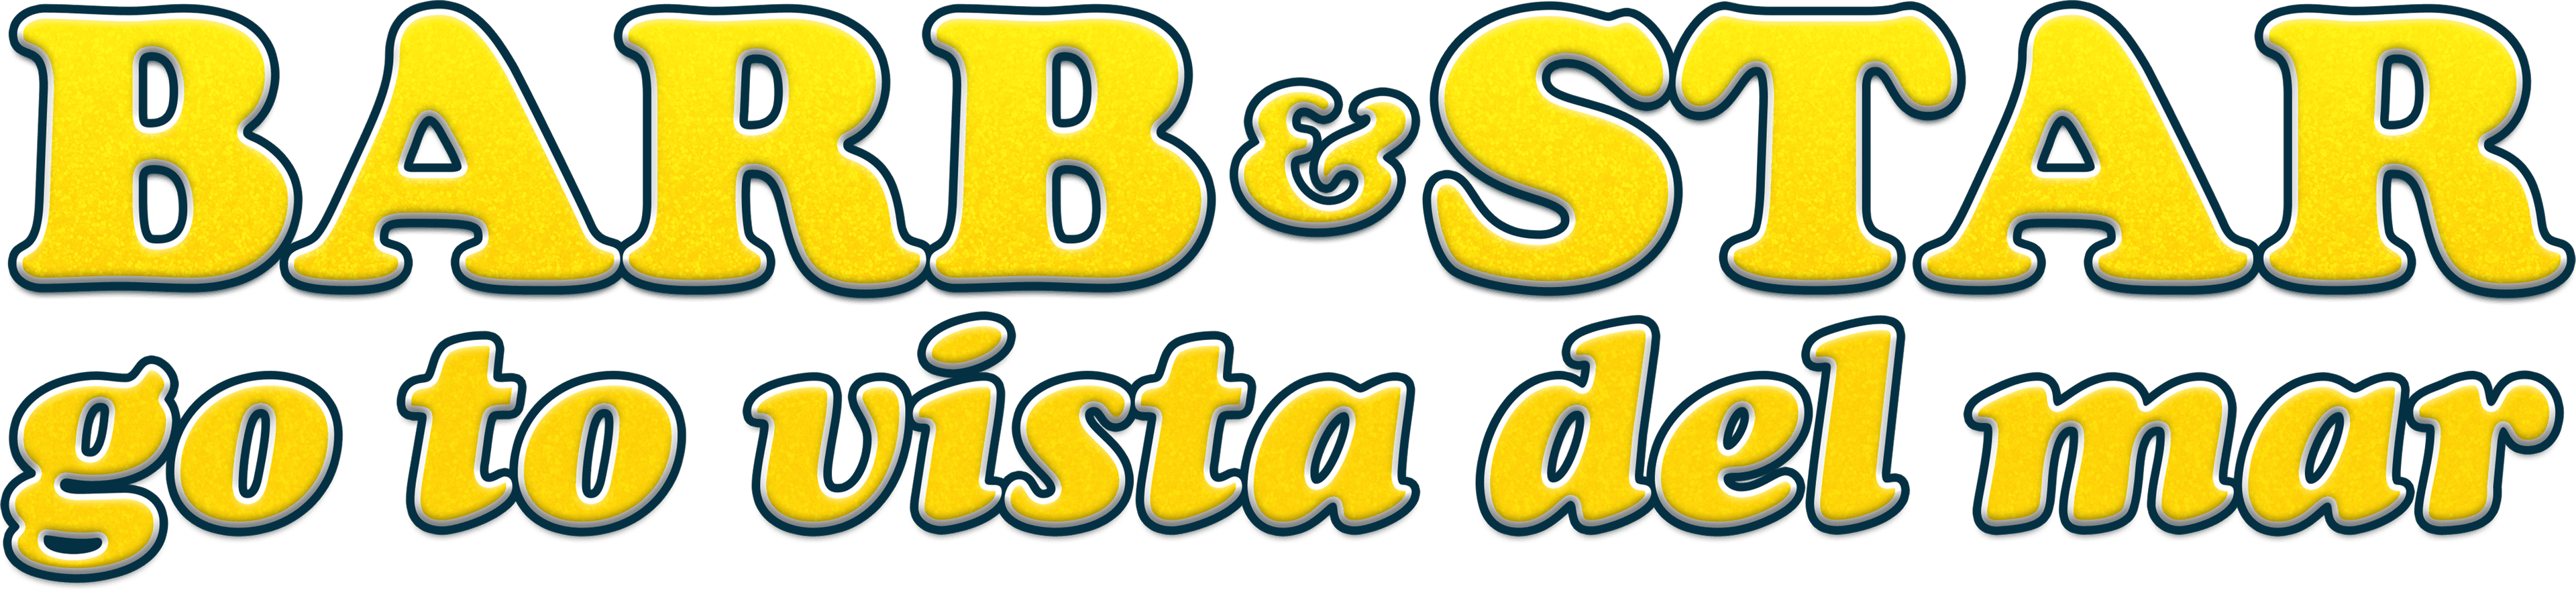 Barb & Star Go to Vista Del Mar logo